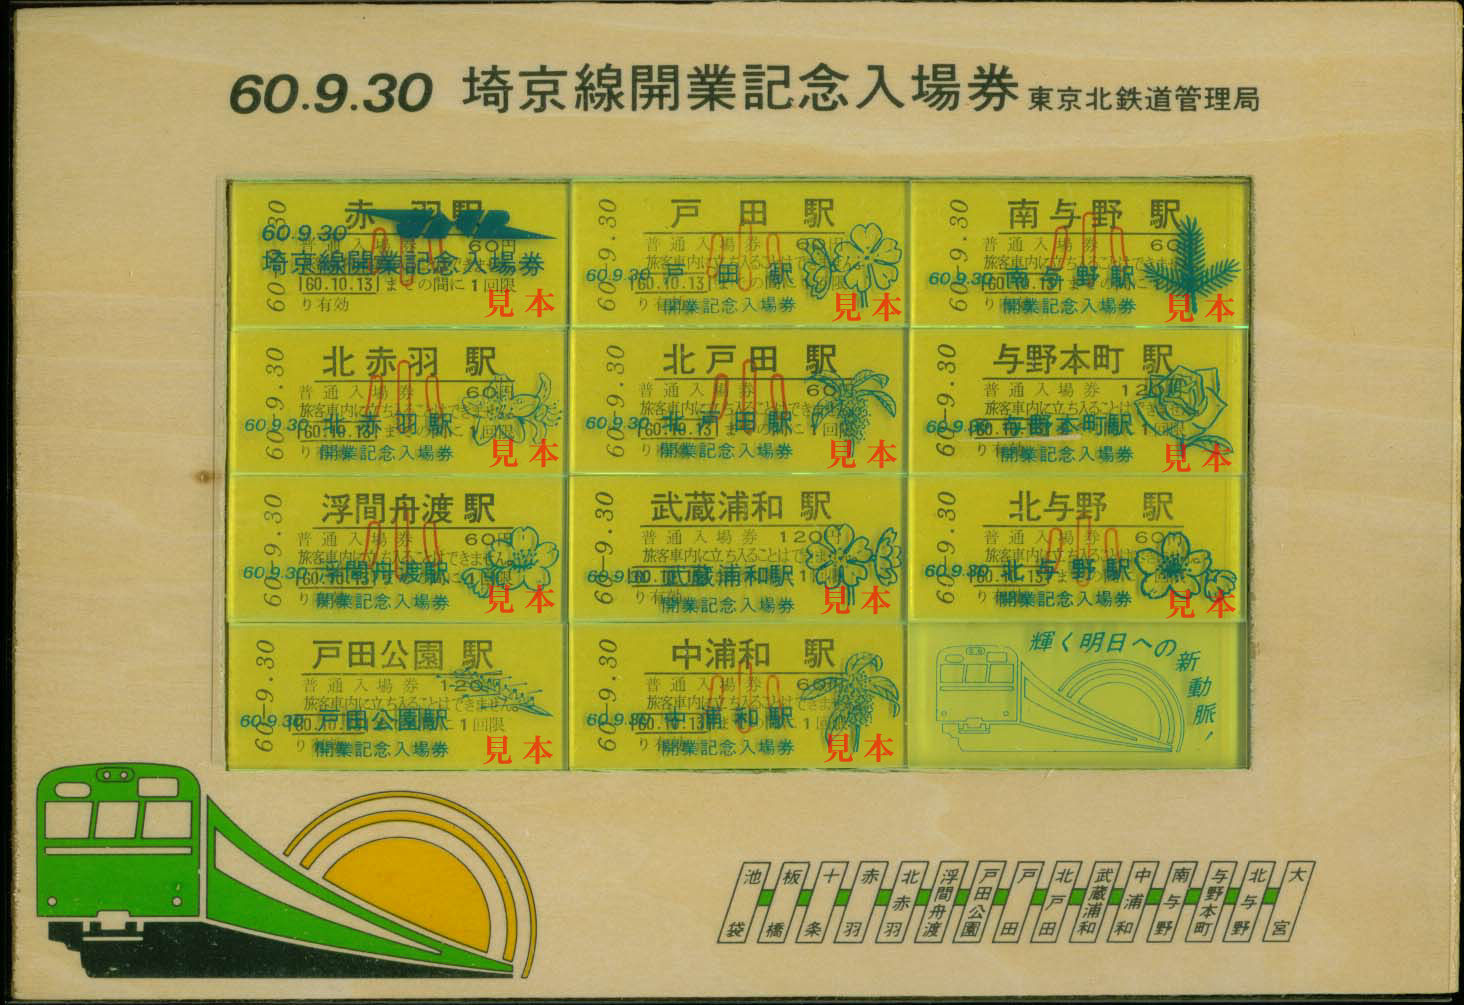 記念切符: 旧国鉄、埼京線開通記念入場券。